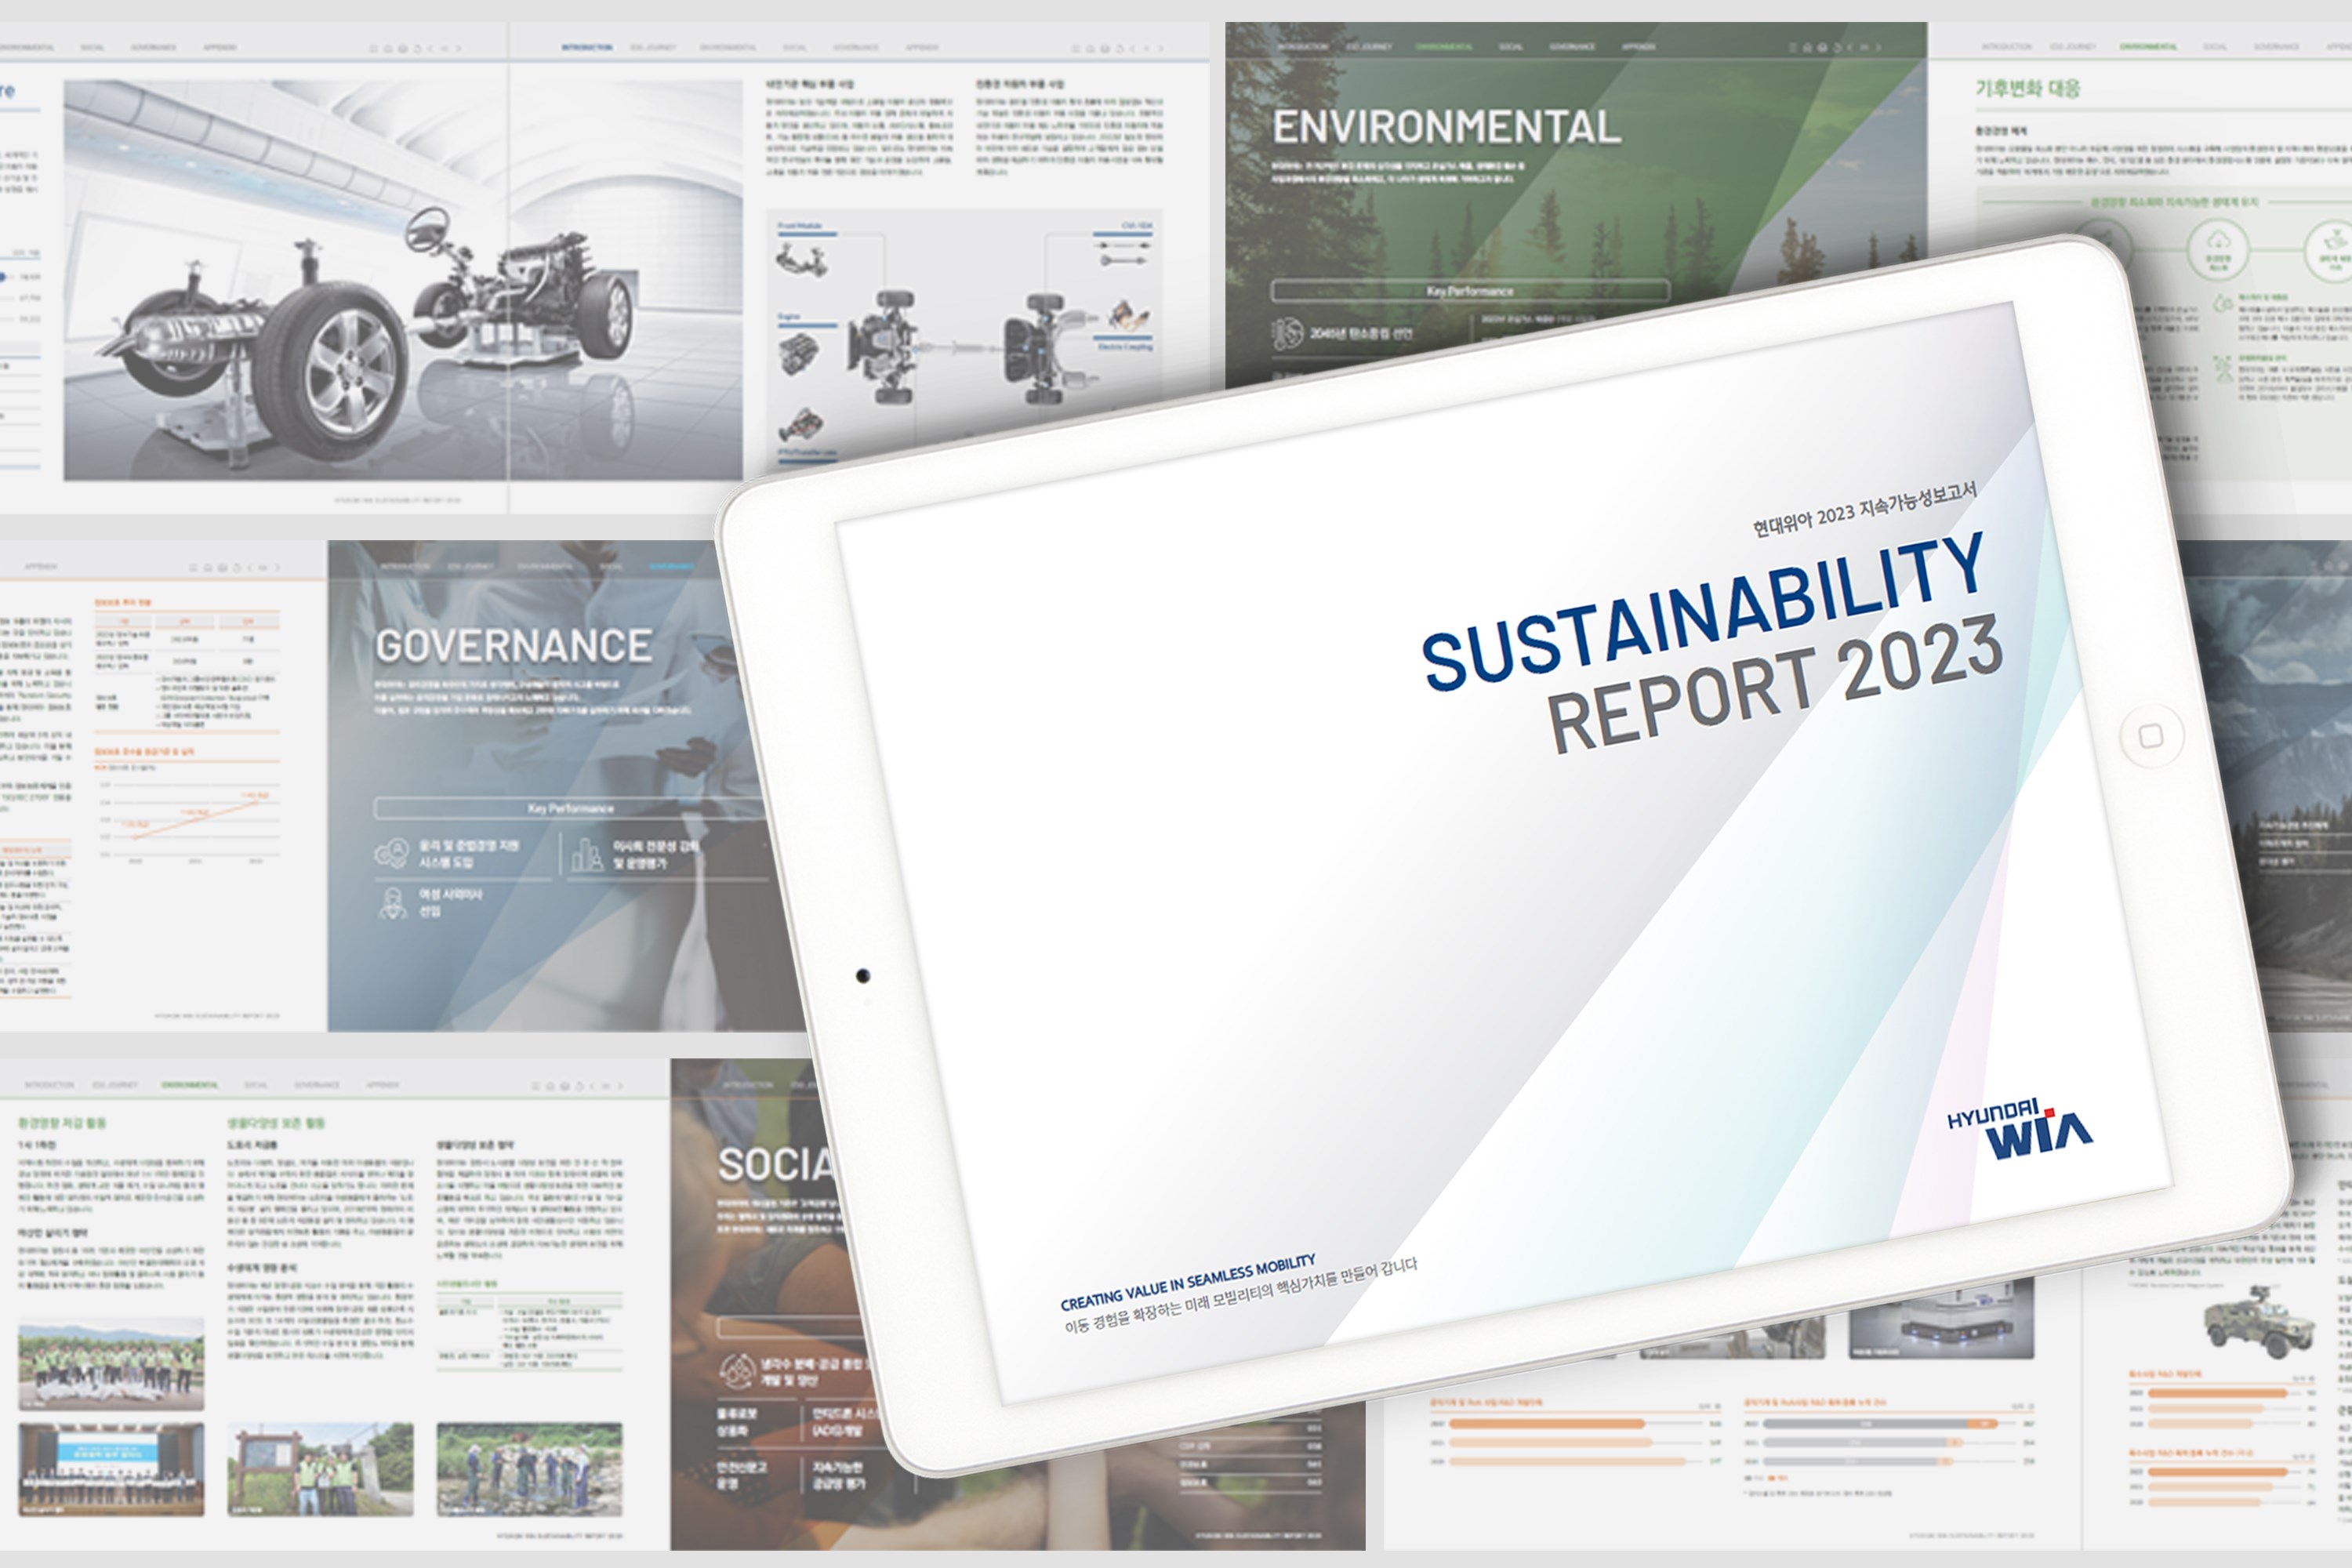 현대위아가 29일 발간한 ‘2023 현대위아 지속가능성보고서’. 현대위아는 지속가능성보고서에 ESG 경영 활동과 향후 목표 등을 담았다.